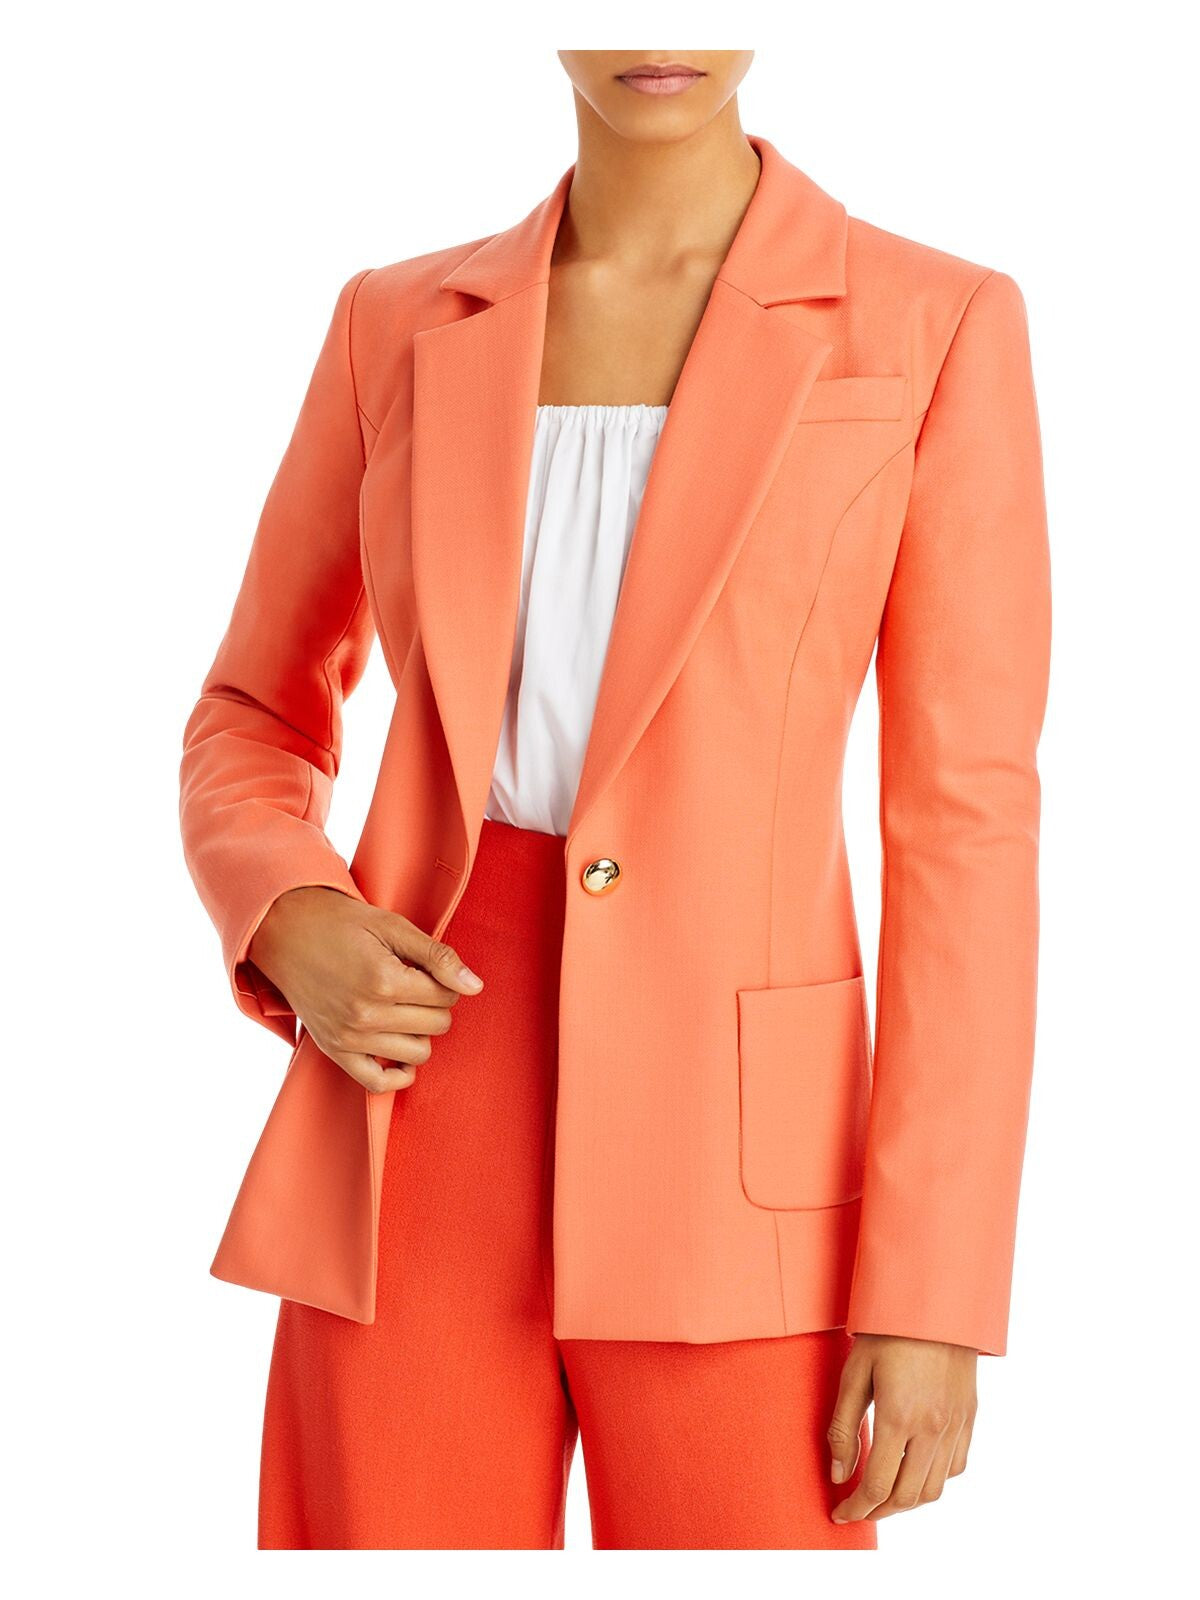 SERGIO HUDSON Womens Orange Textured Pocketed Lined Shoulder Pads Back Slits Wear To Work Blazer Jacket 10